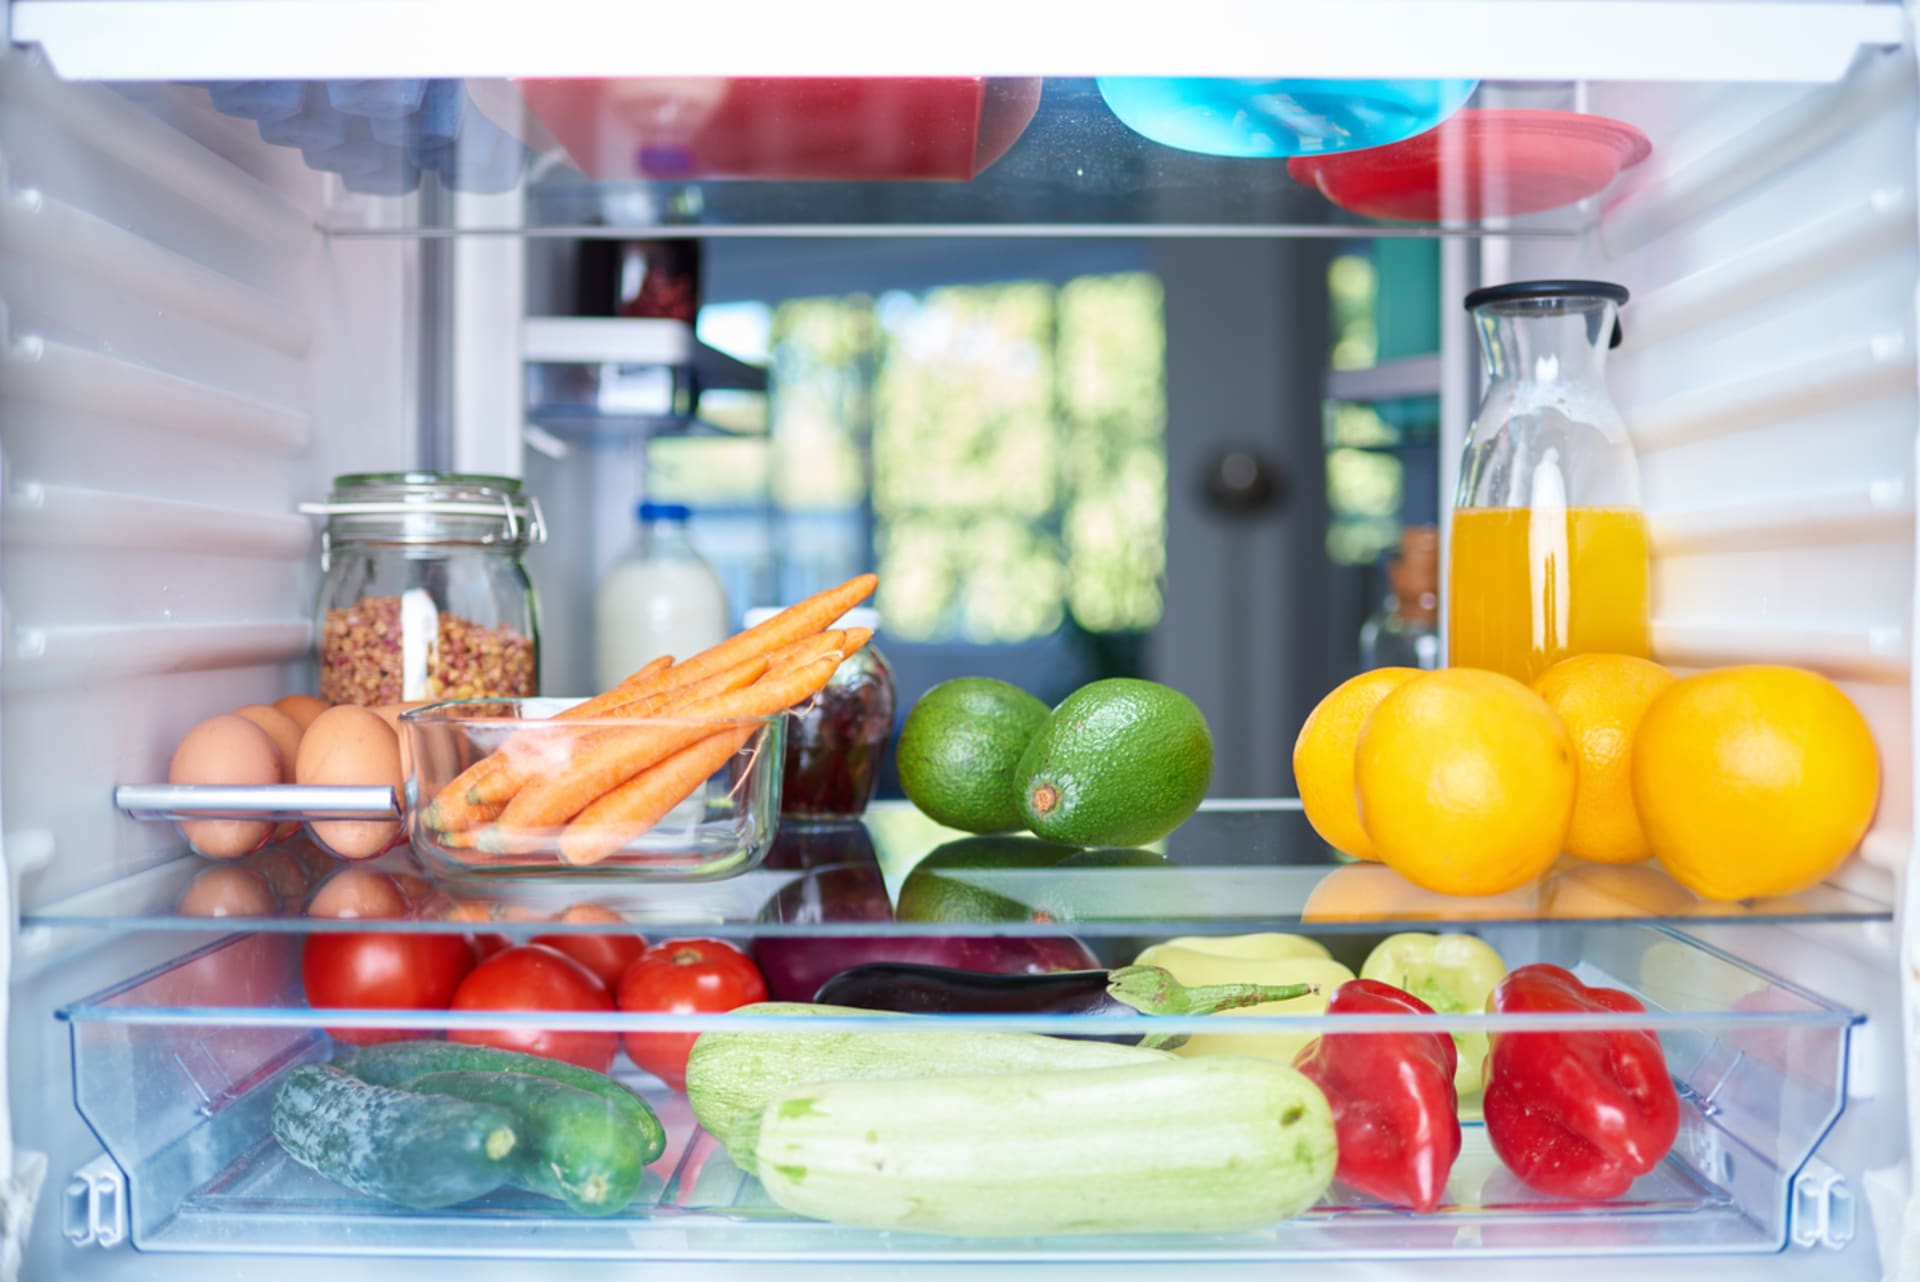 Udělejte si v lednici systém, abyste zbytečně nepřicházeli o nakoupené jídlo kvůli kažení.